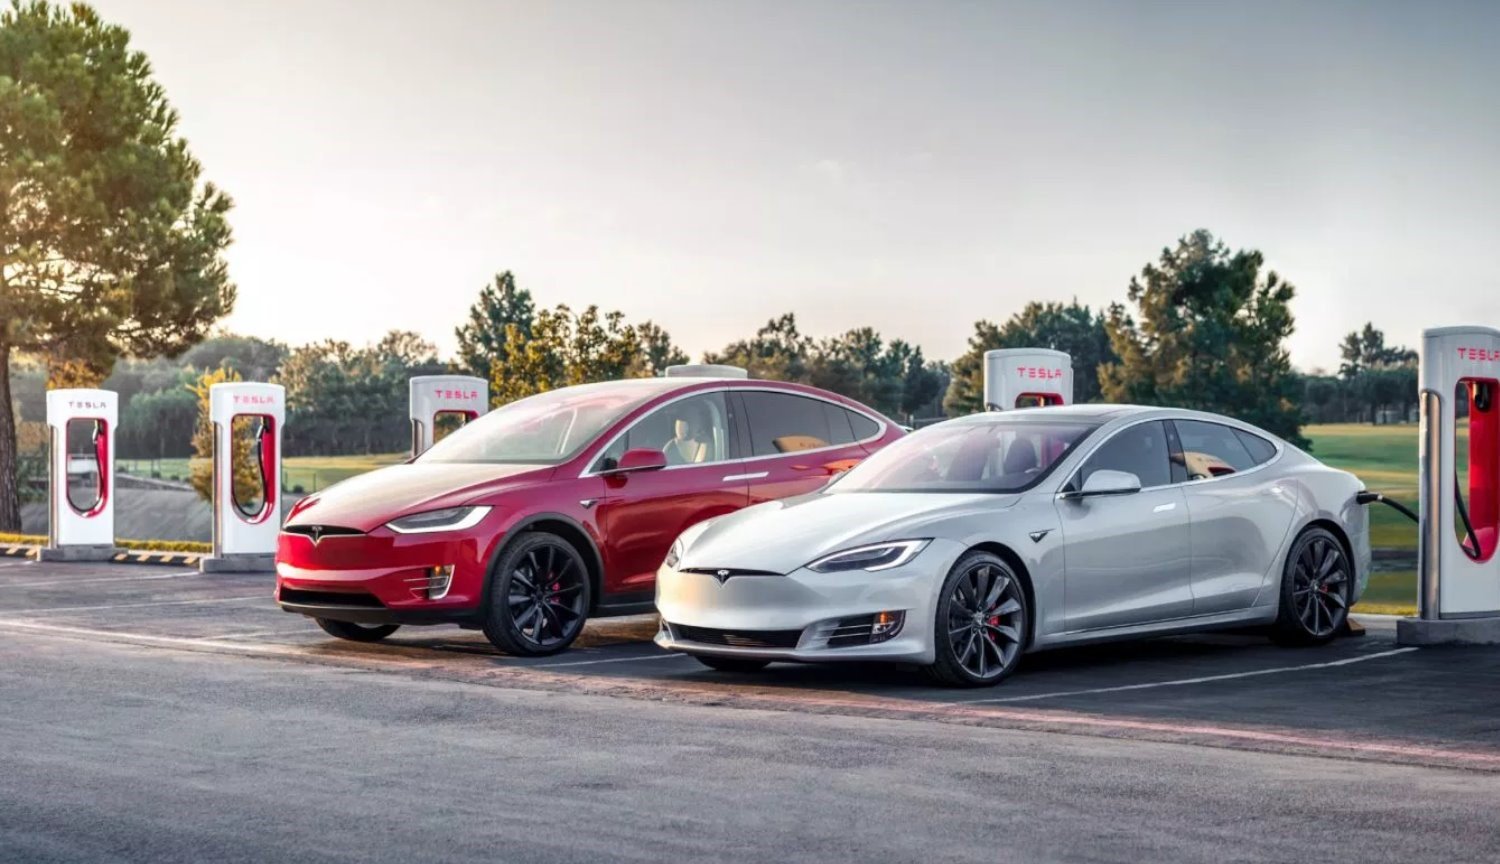 Samochody Tesla Model S i Model X zmienili nazwy, dane techniczne i ceny